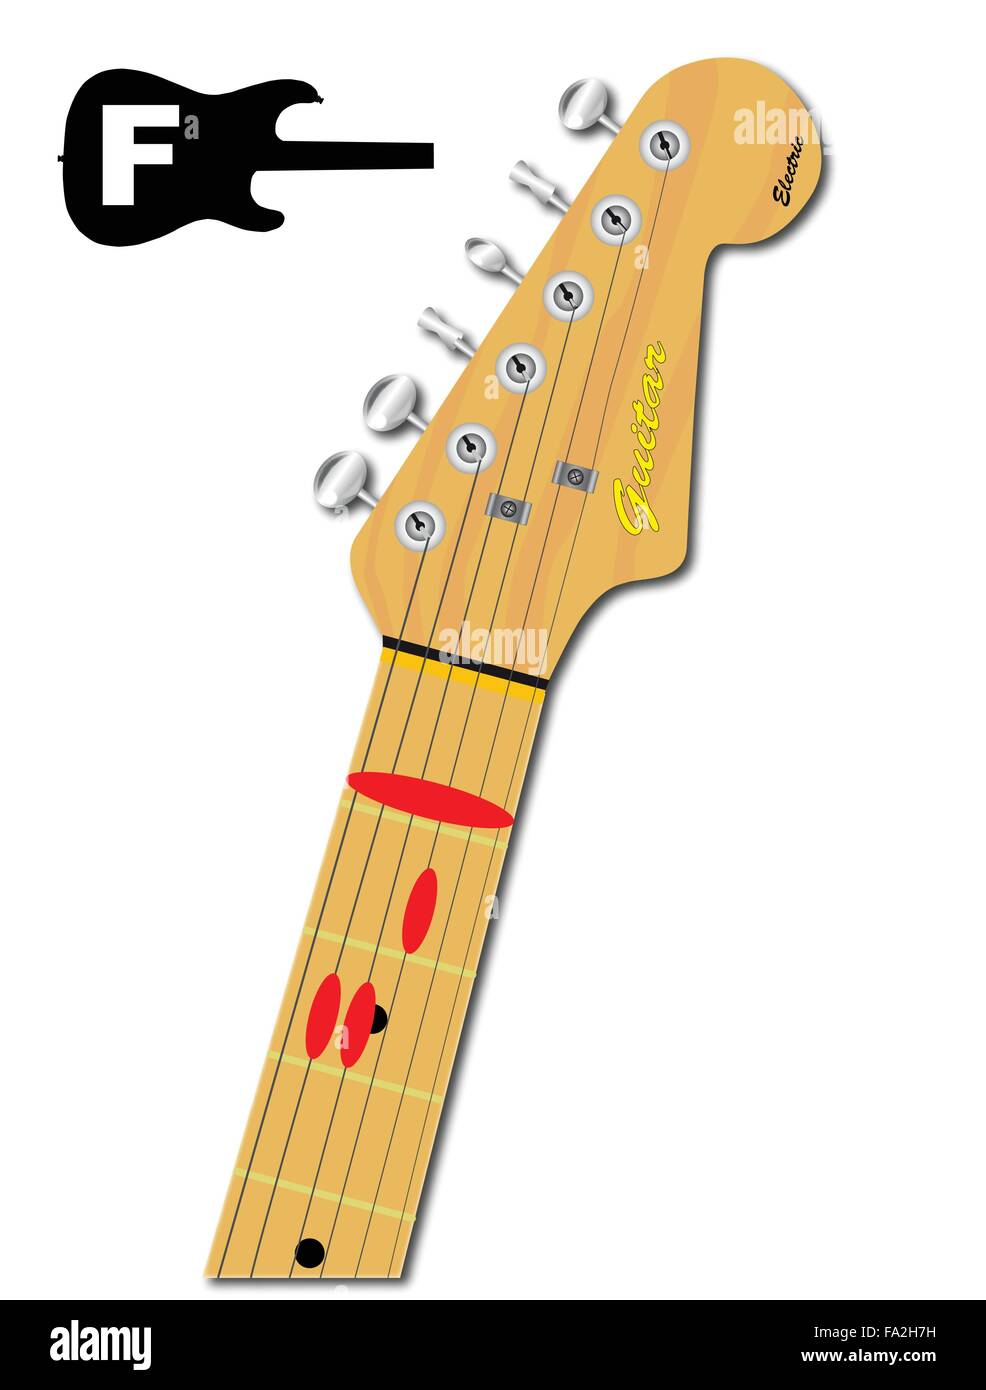 Une guitare électrique cou avec l'accord de fa majeur de la forme indiquée avec boutons rouges Illustration de Vecteur